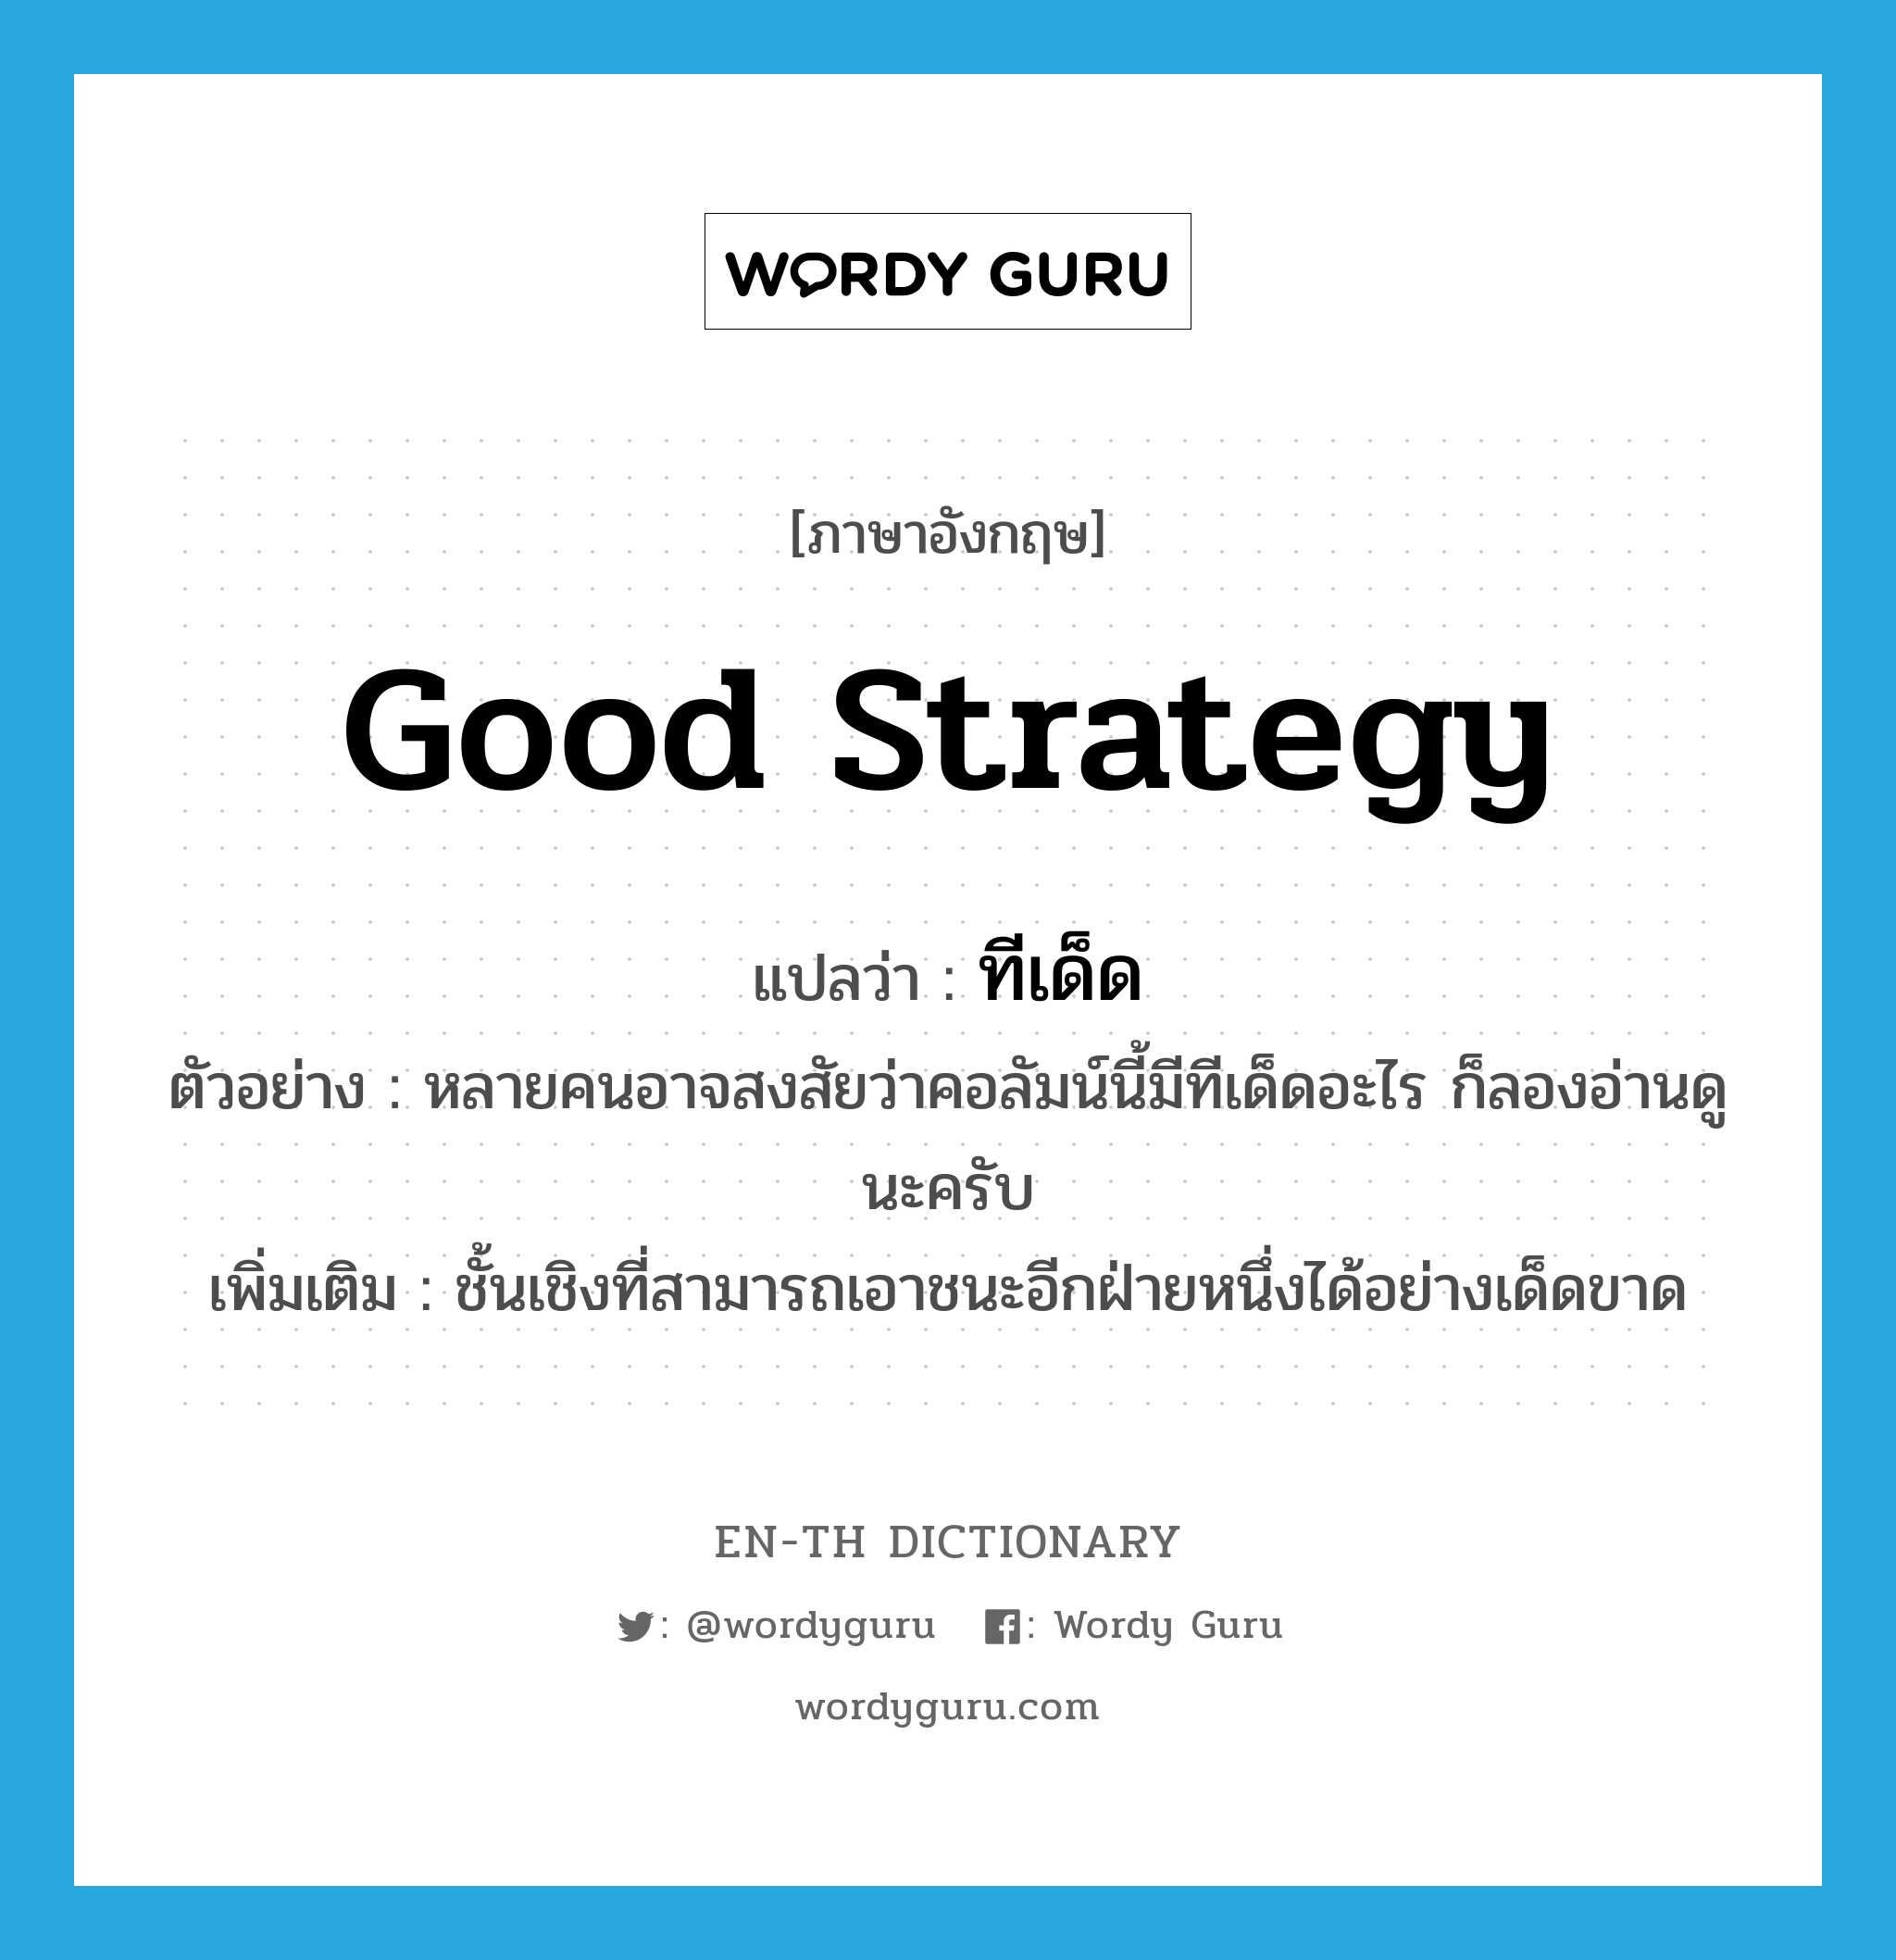 good strategy แปลว่า?, คำศัพท์ภาษาอังกฤษ good strategy แปลว่า ทีเด็ด ประเภท N ตัวอย่าง หลายคนอาจสงสัยว่าคอลัมน์นี้มีทีเด็ดอะไร ก็ลองอ่านดูนะครับ เพิ่มเติม ชั้นเชิงที่สามารถเอาชนะอีกฝ่ายหนึ่งได้อย่างเด็ดขาด หมวด N